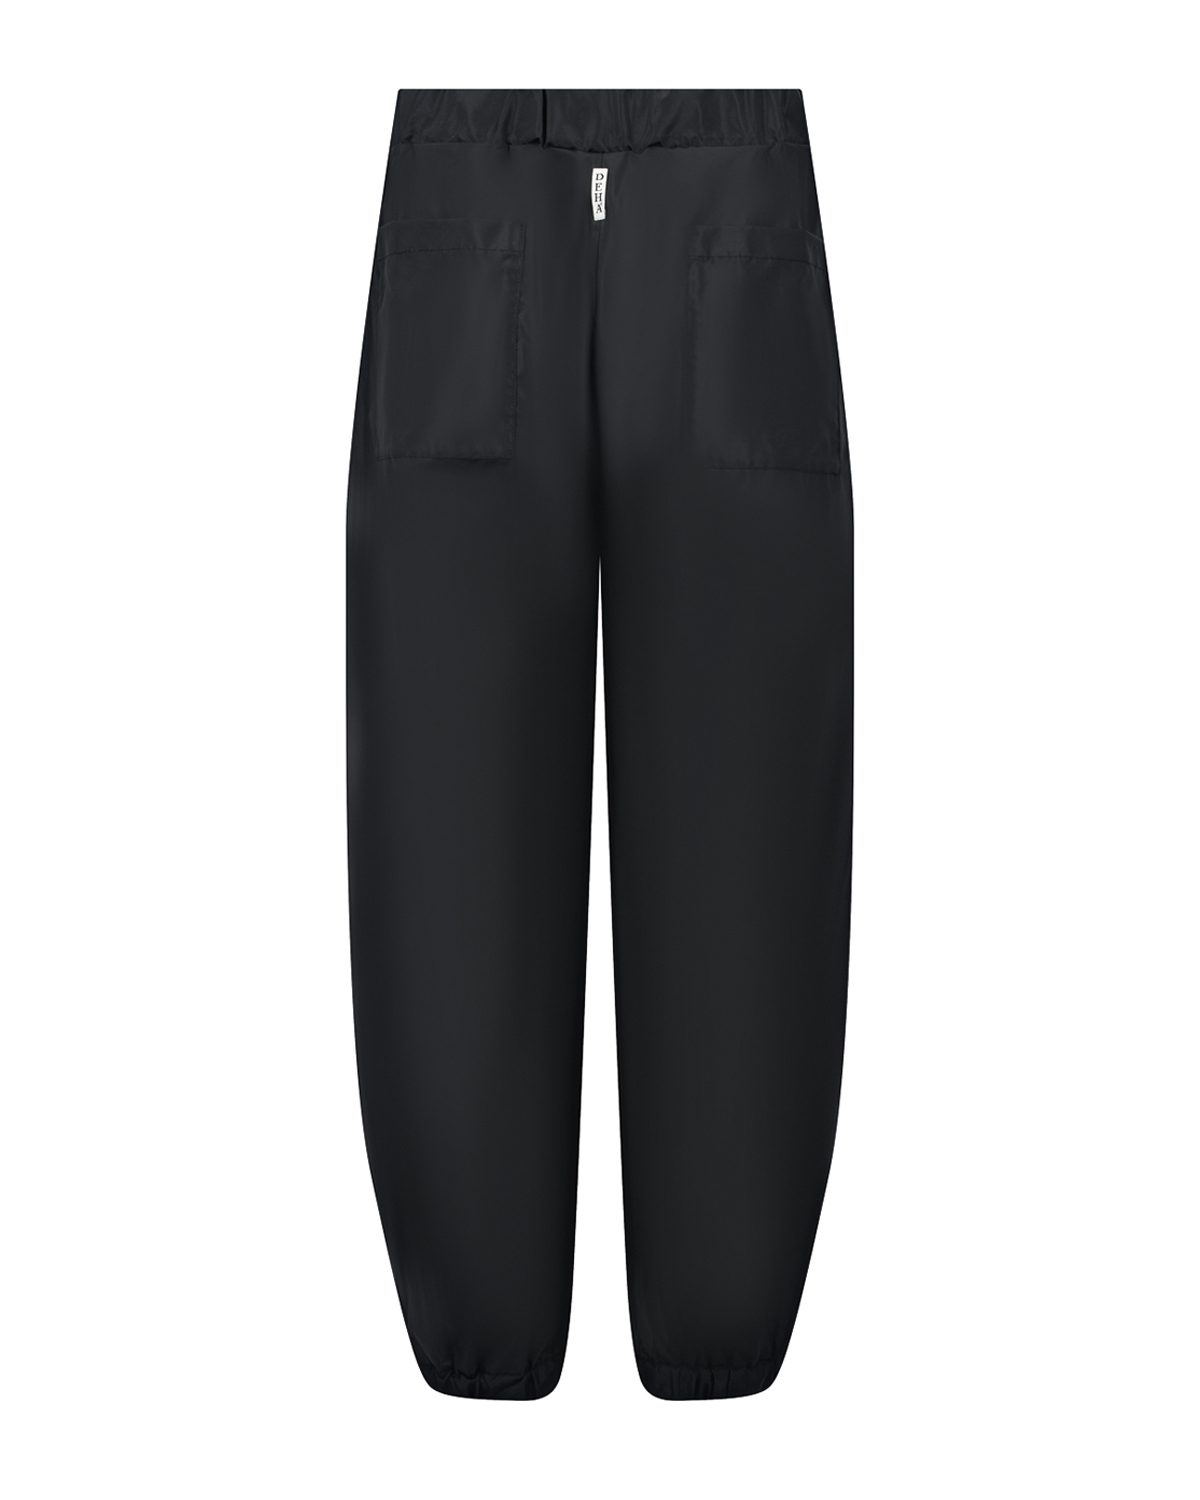 Черные джоггеры с накладными карманами Deha, размер 38, цвет черный - фото 5